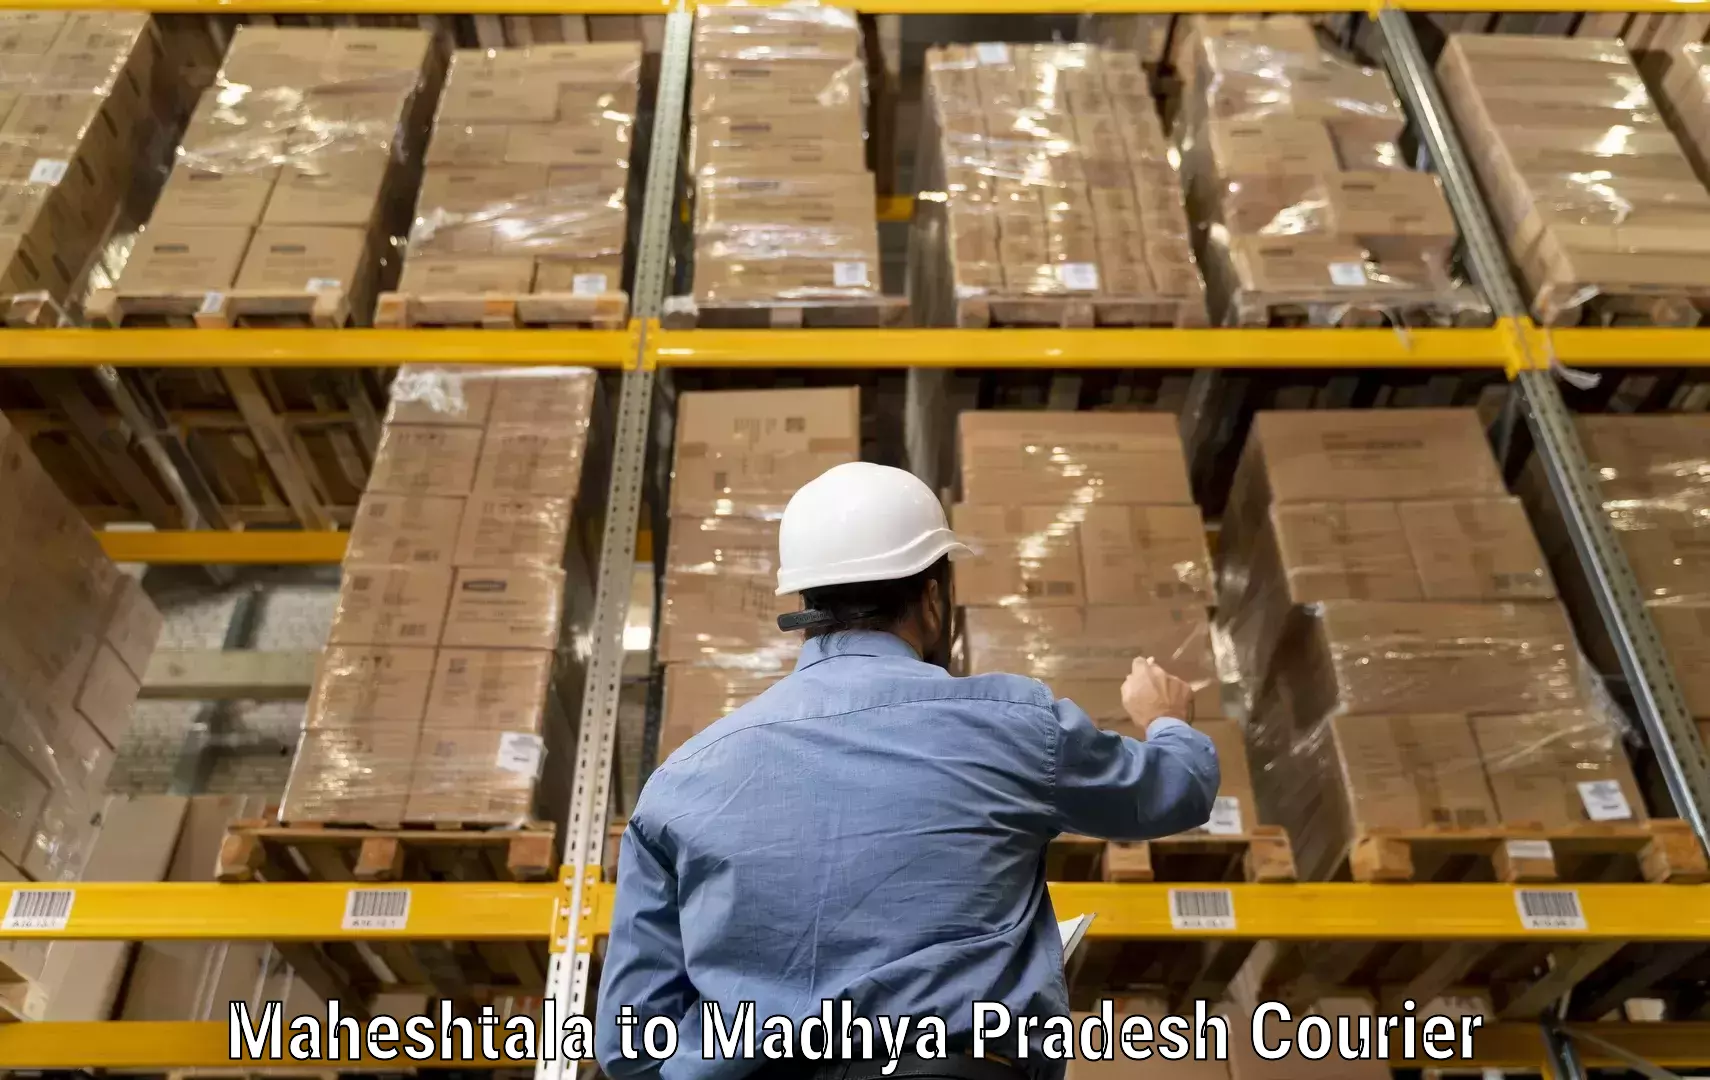 Express courier facilities Maheshtala to Jhabua